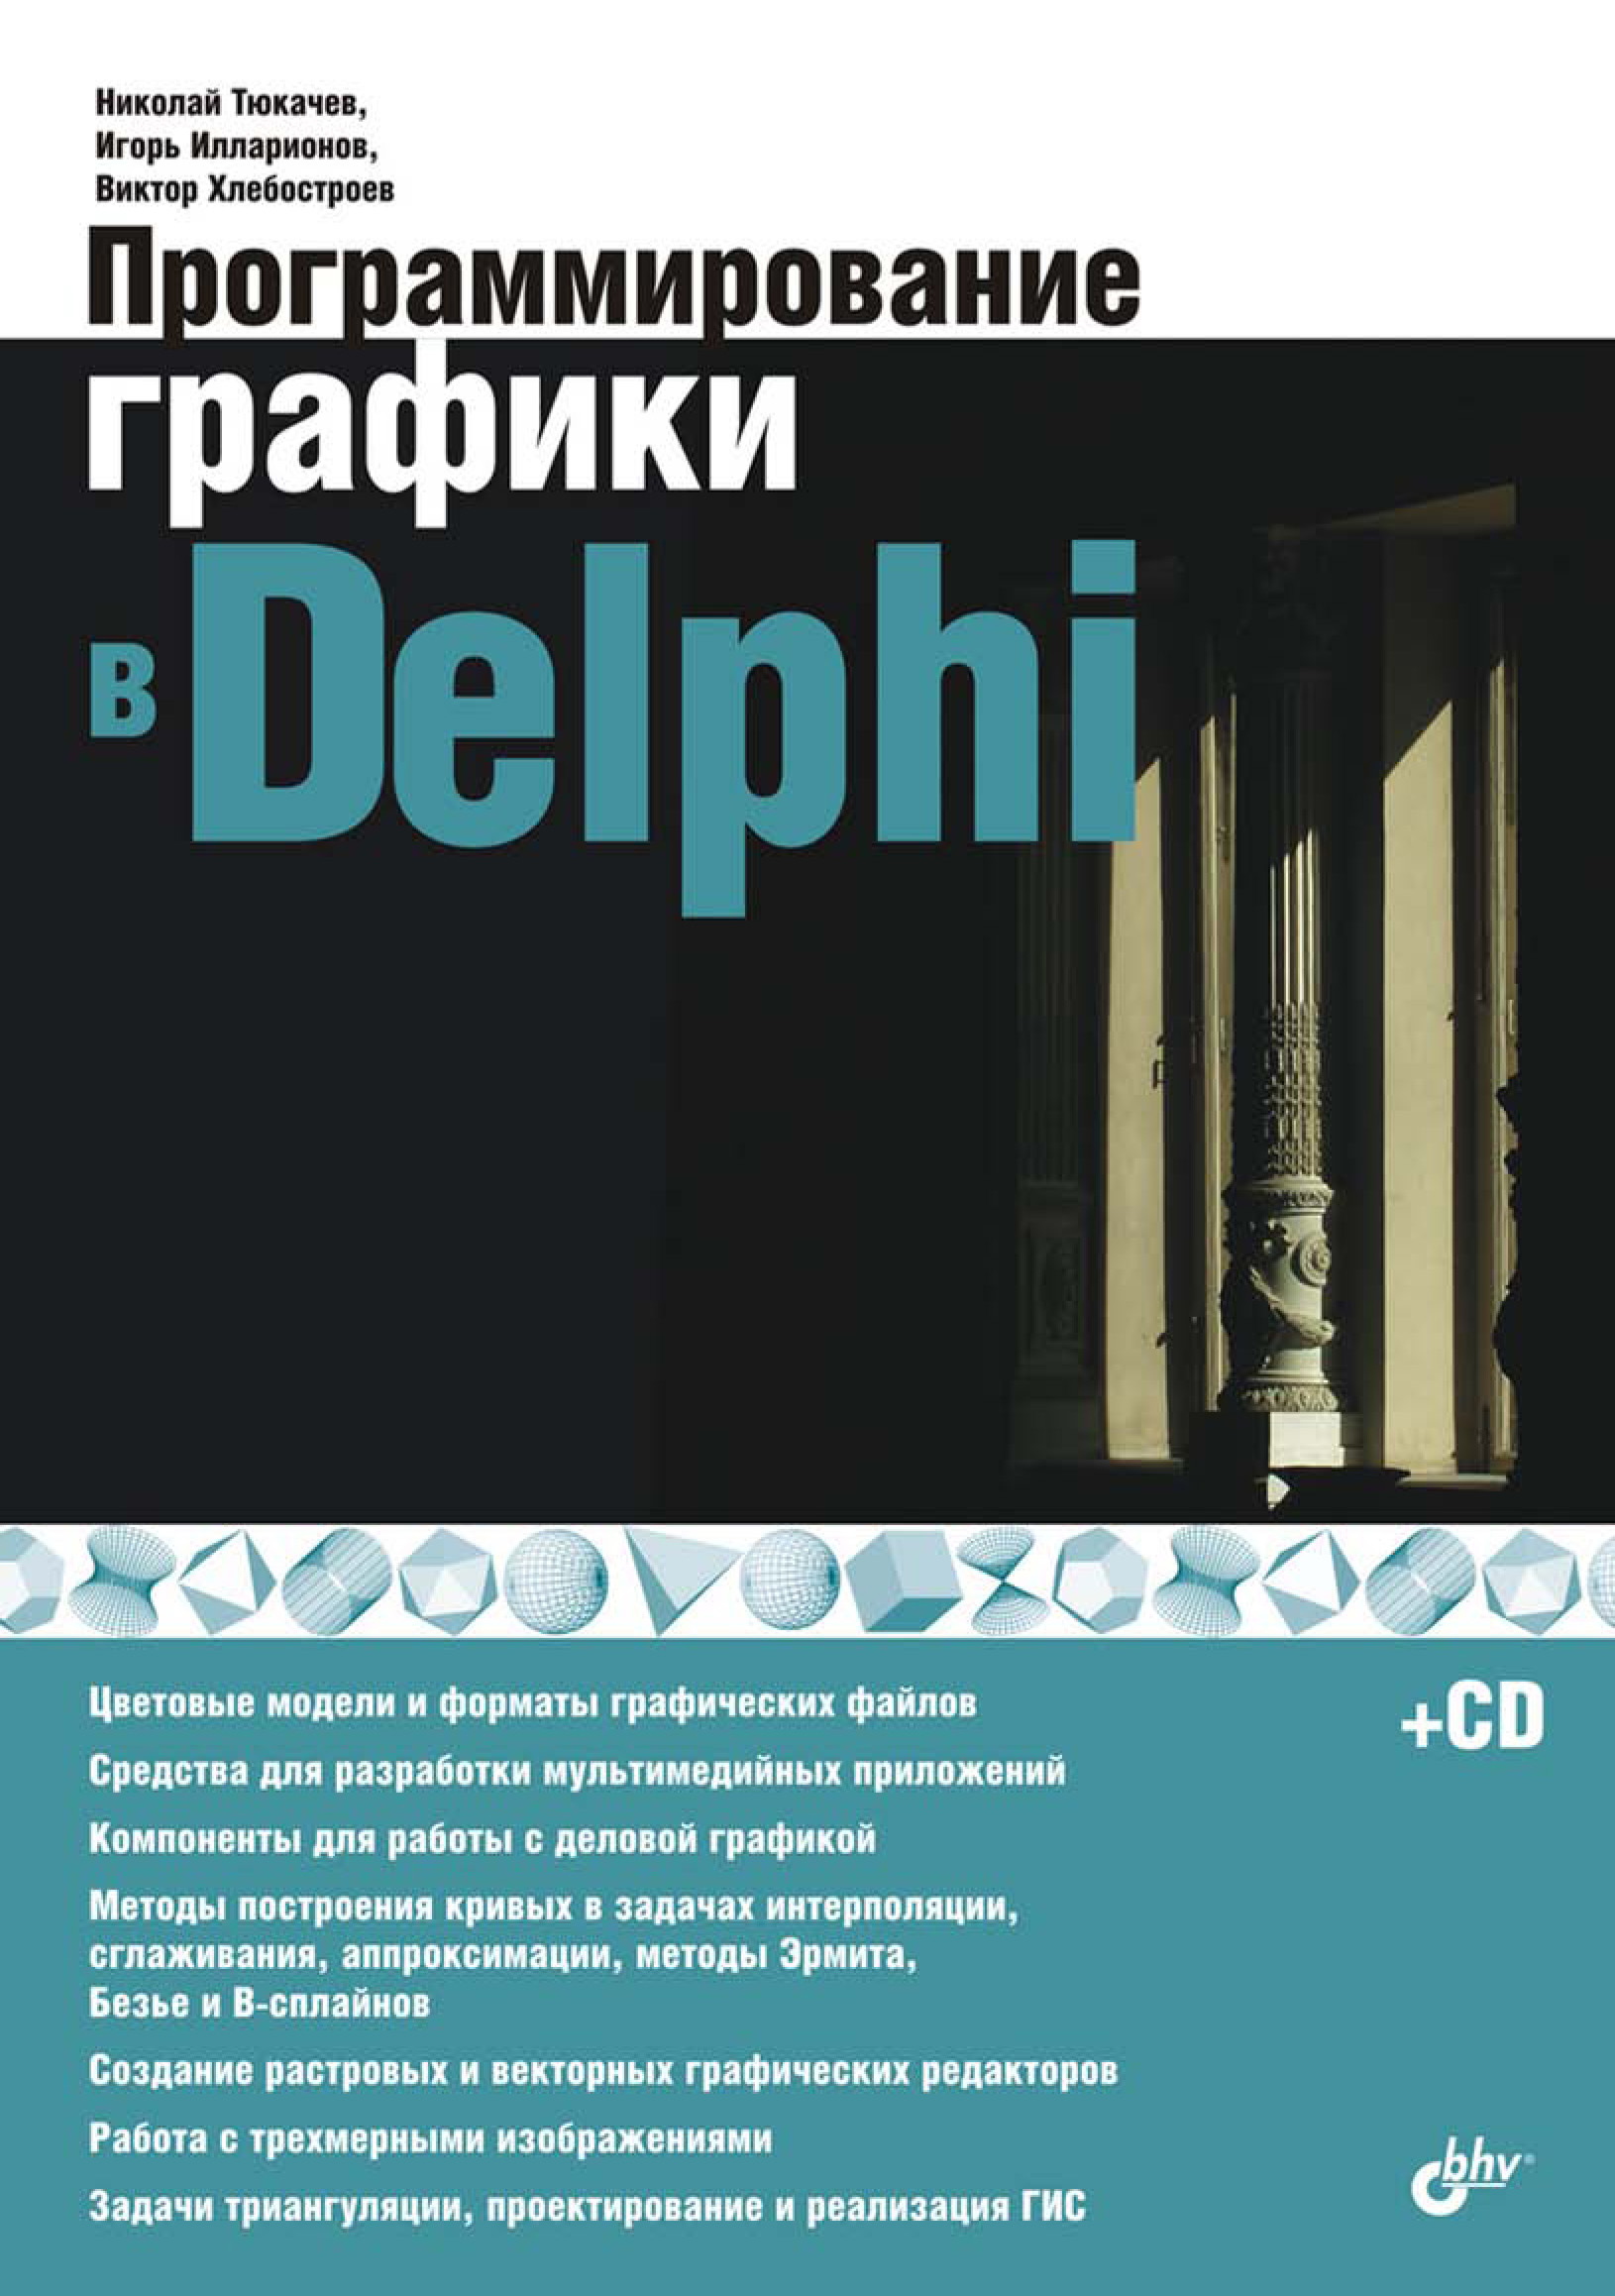 Книга  Программирование графики в Delphi созданная Виктор Хлебостроев, Игорь Илларионов, Николай Тюкачёв может относится к жанру программирование. Стоимость электронной книги Программирование графики в Delphi с идентификатором 6661668 составляет 335.00 руб.